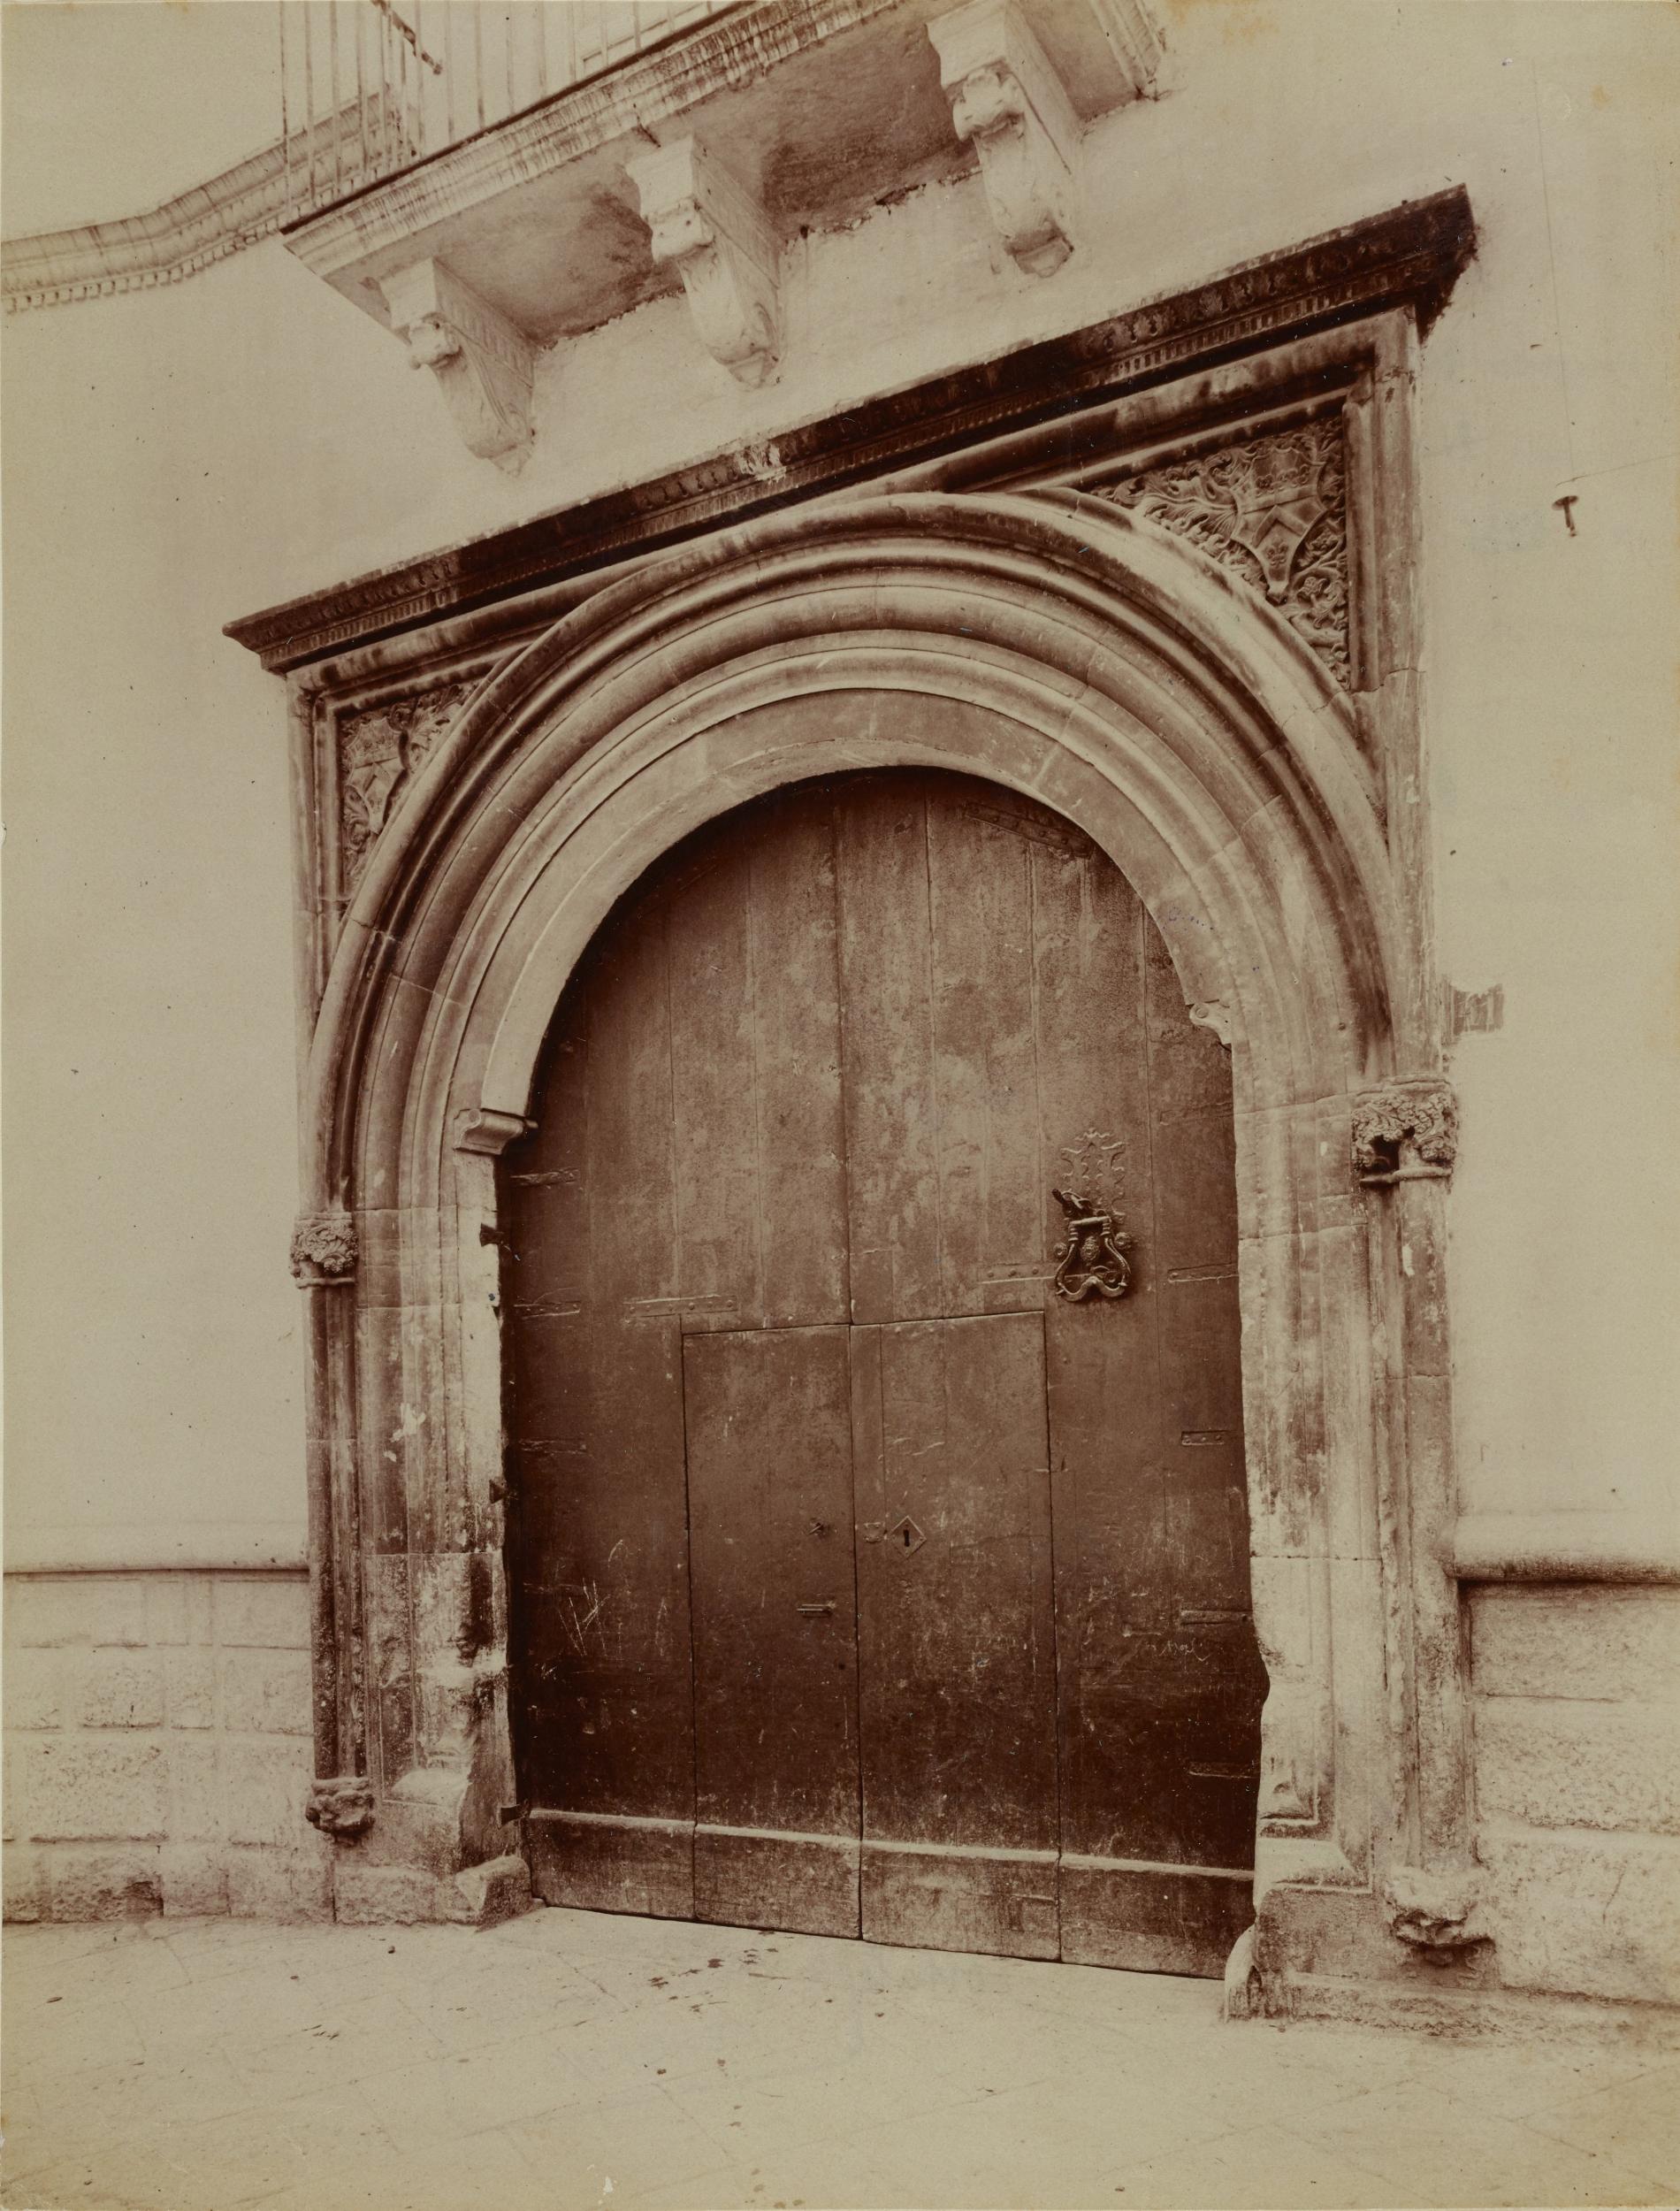 Fotografo non identificato, Bitonto - Palazzo Sylos-Labini, cortile, portale gotico-catalano, 1891-1910, albumina/carta, MPI137917